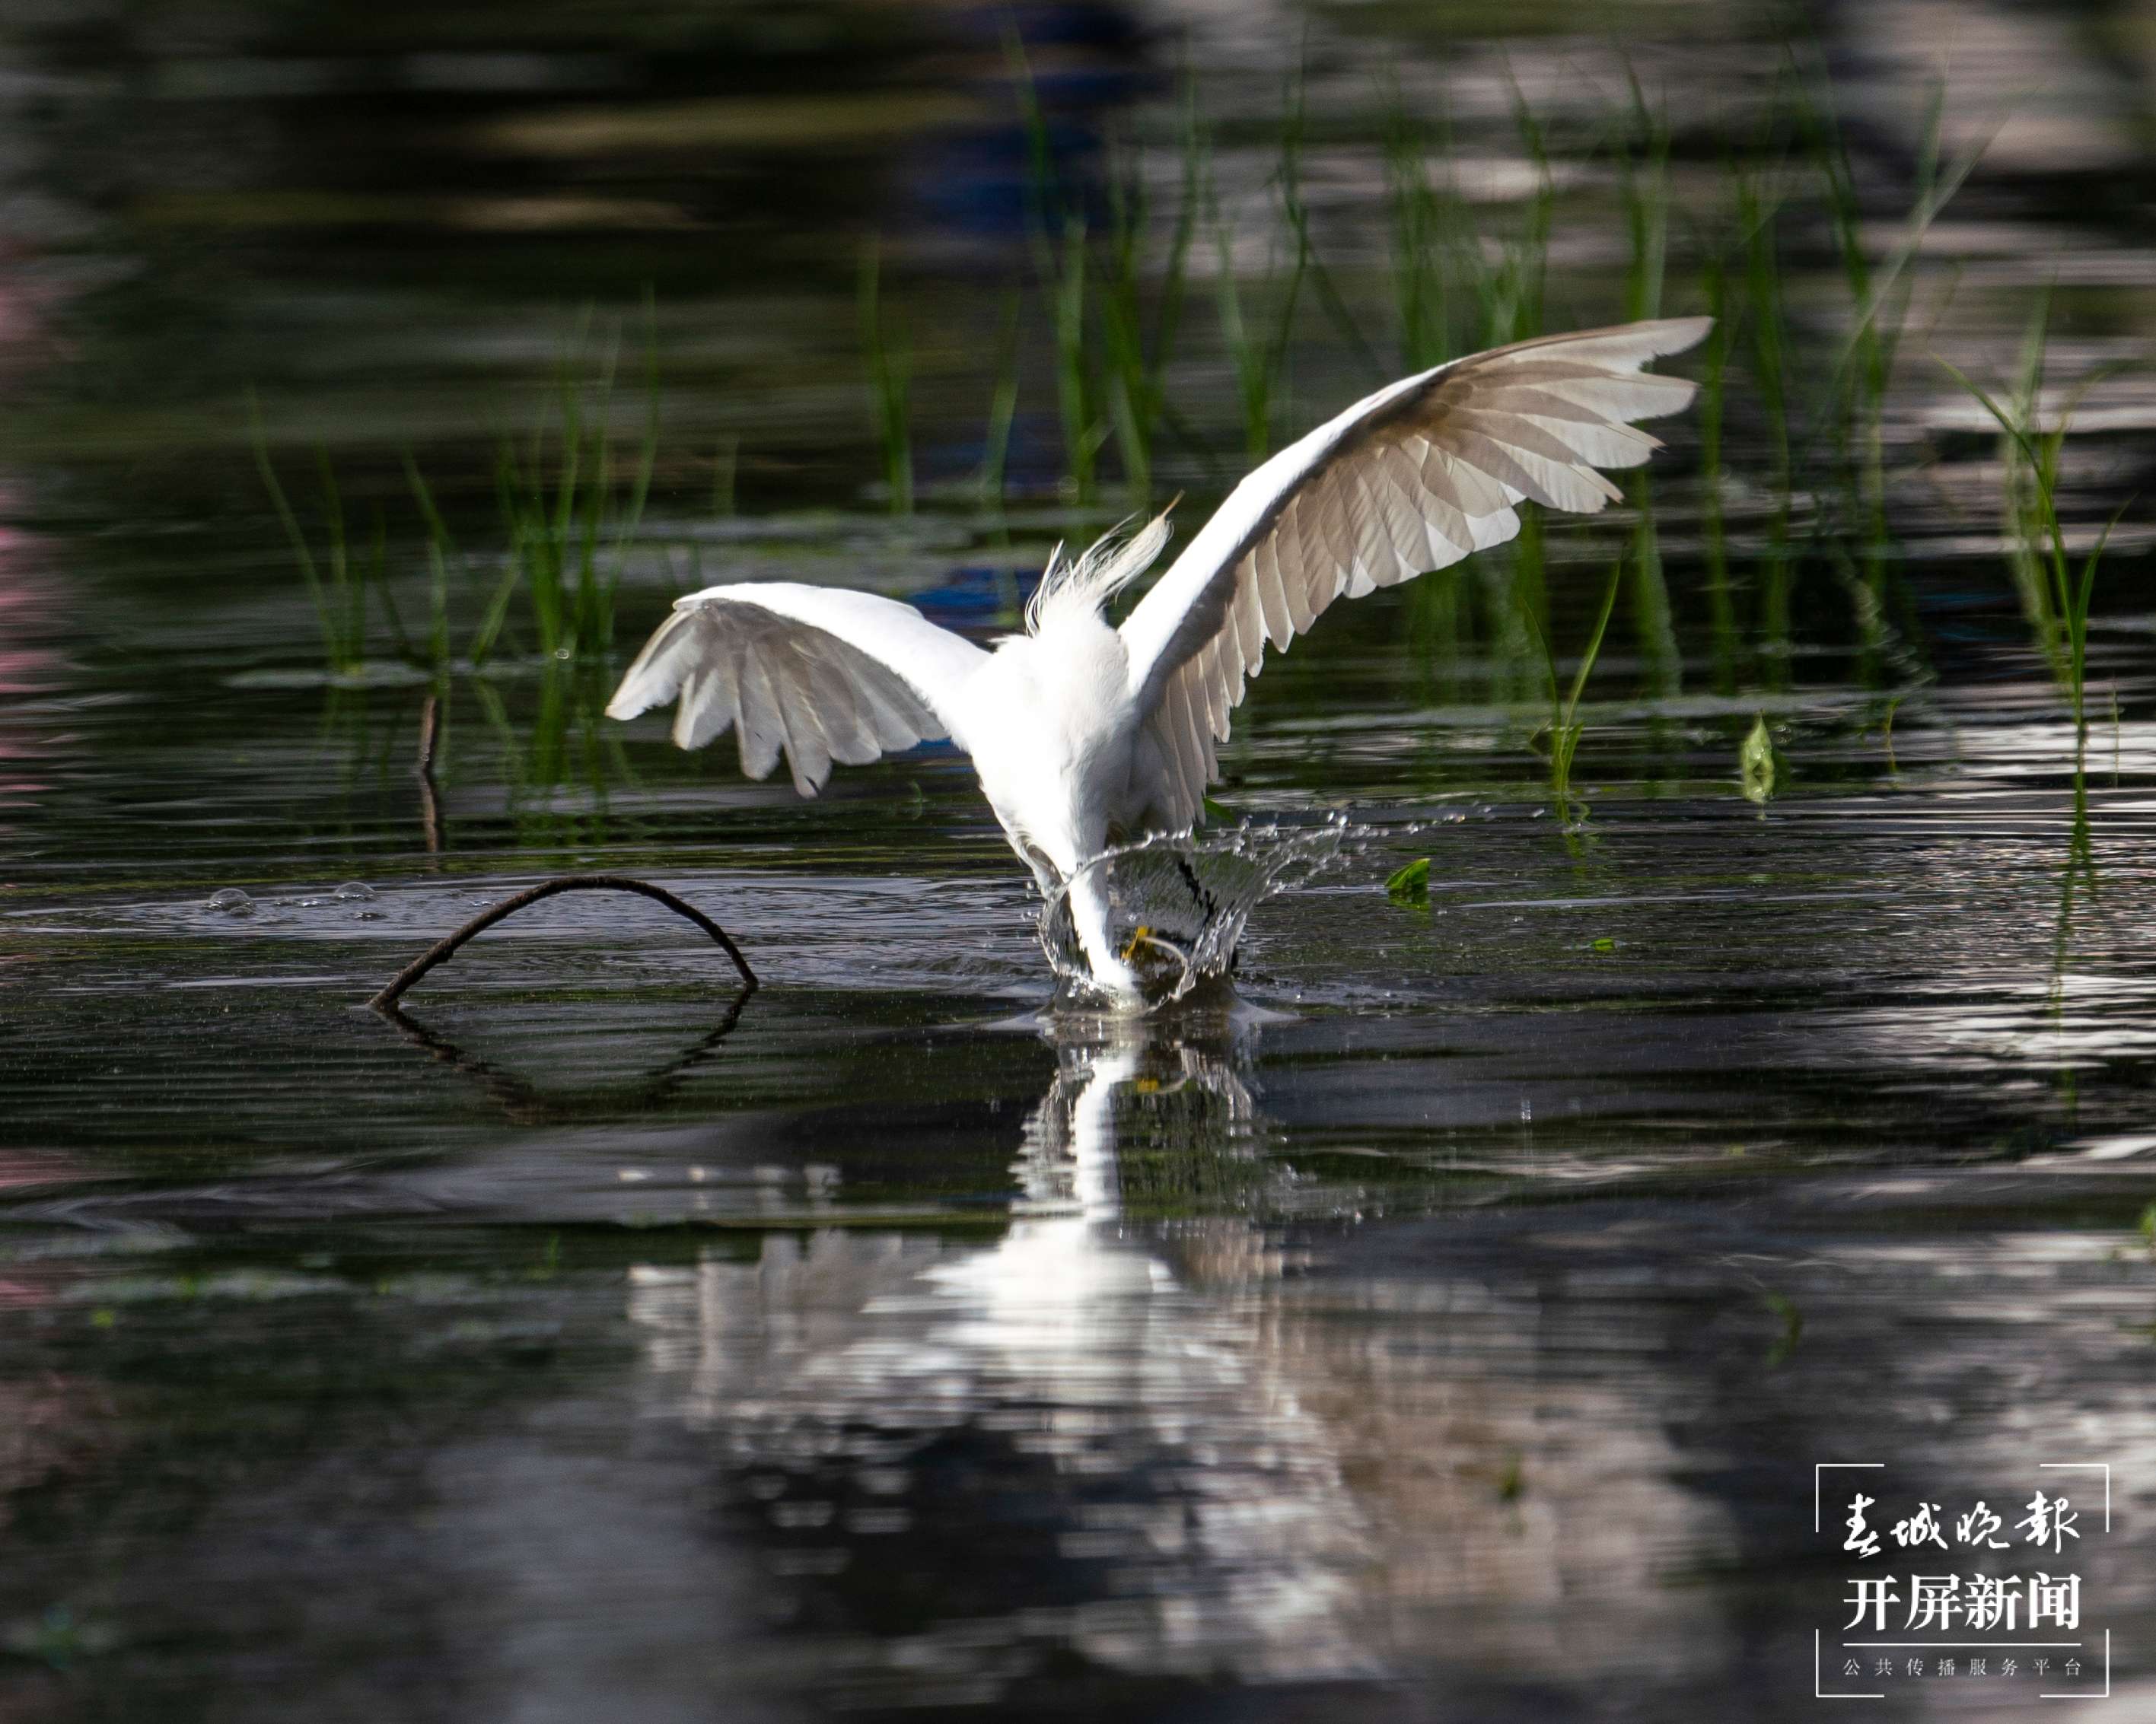 有一种叫云南的生活 洱海湿地白鹭捕鱼：动作丝滑，姿态优美 (8).jpg